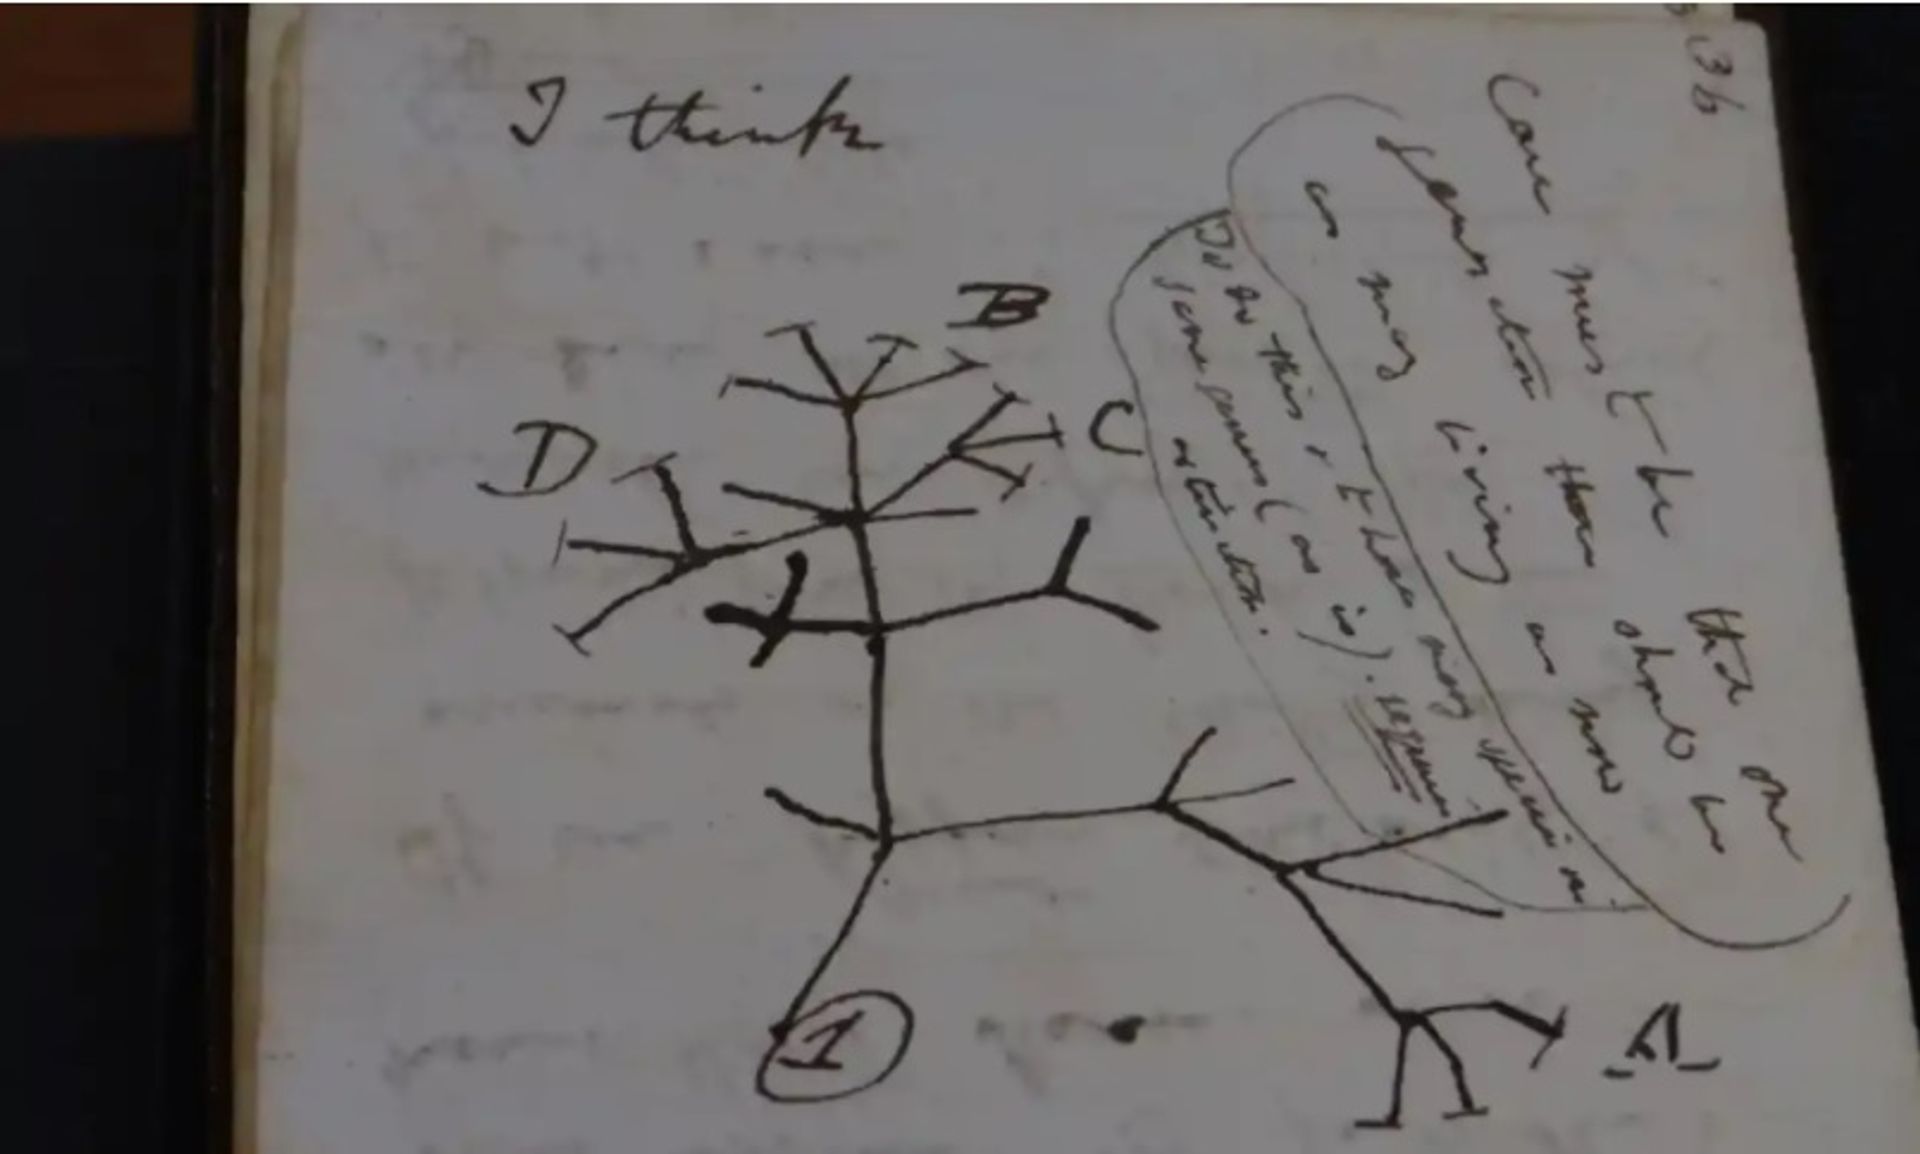 שרטוט עץ החיים של צ'ארלס דרווין משנת 1837 באחד מכתבי היד שהוחזרו

באדיבות ספריית אוניברסיטת קיימברידג'